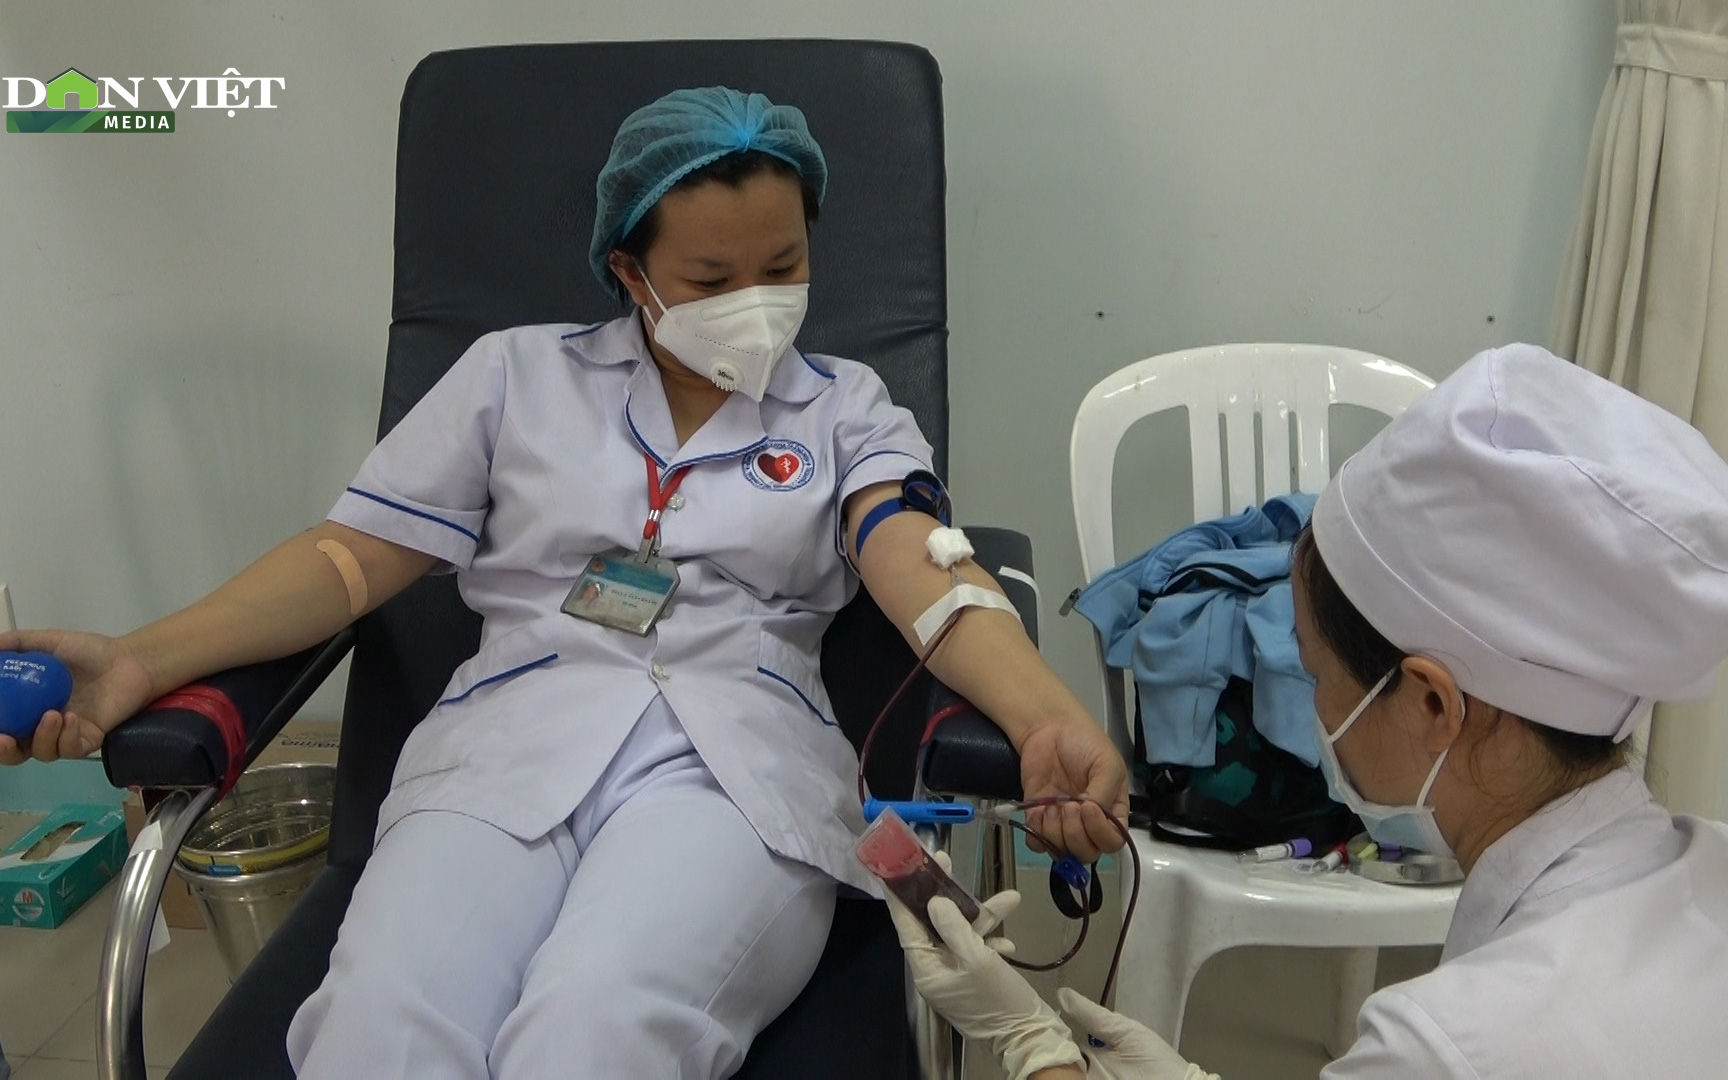 Tỉnh đông dân thứ 5 cả nước buộc phải kêu gọi người dân hiến máu vì đang cạn nguồn cung